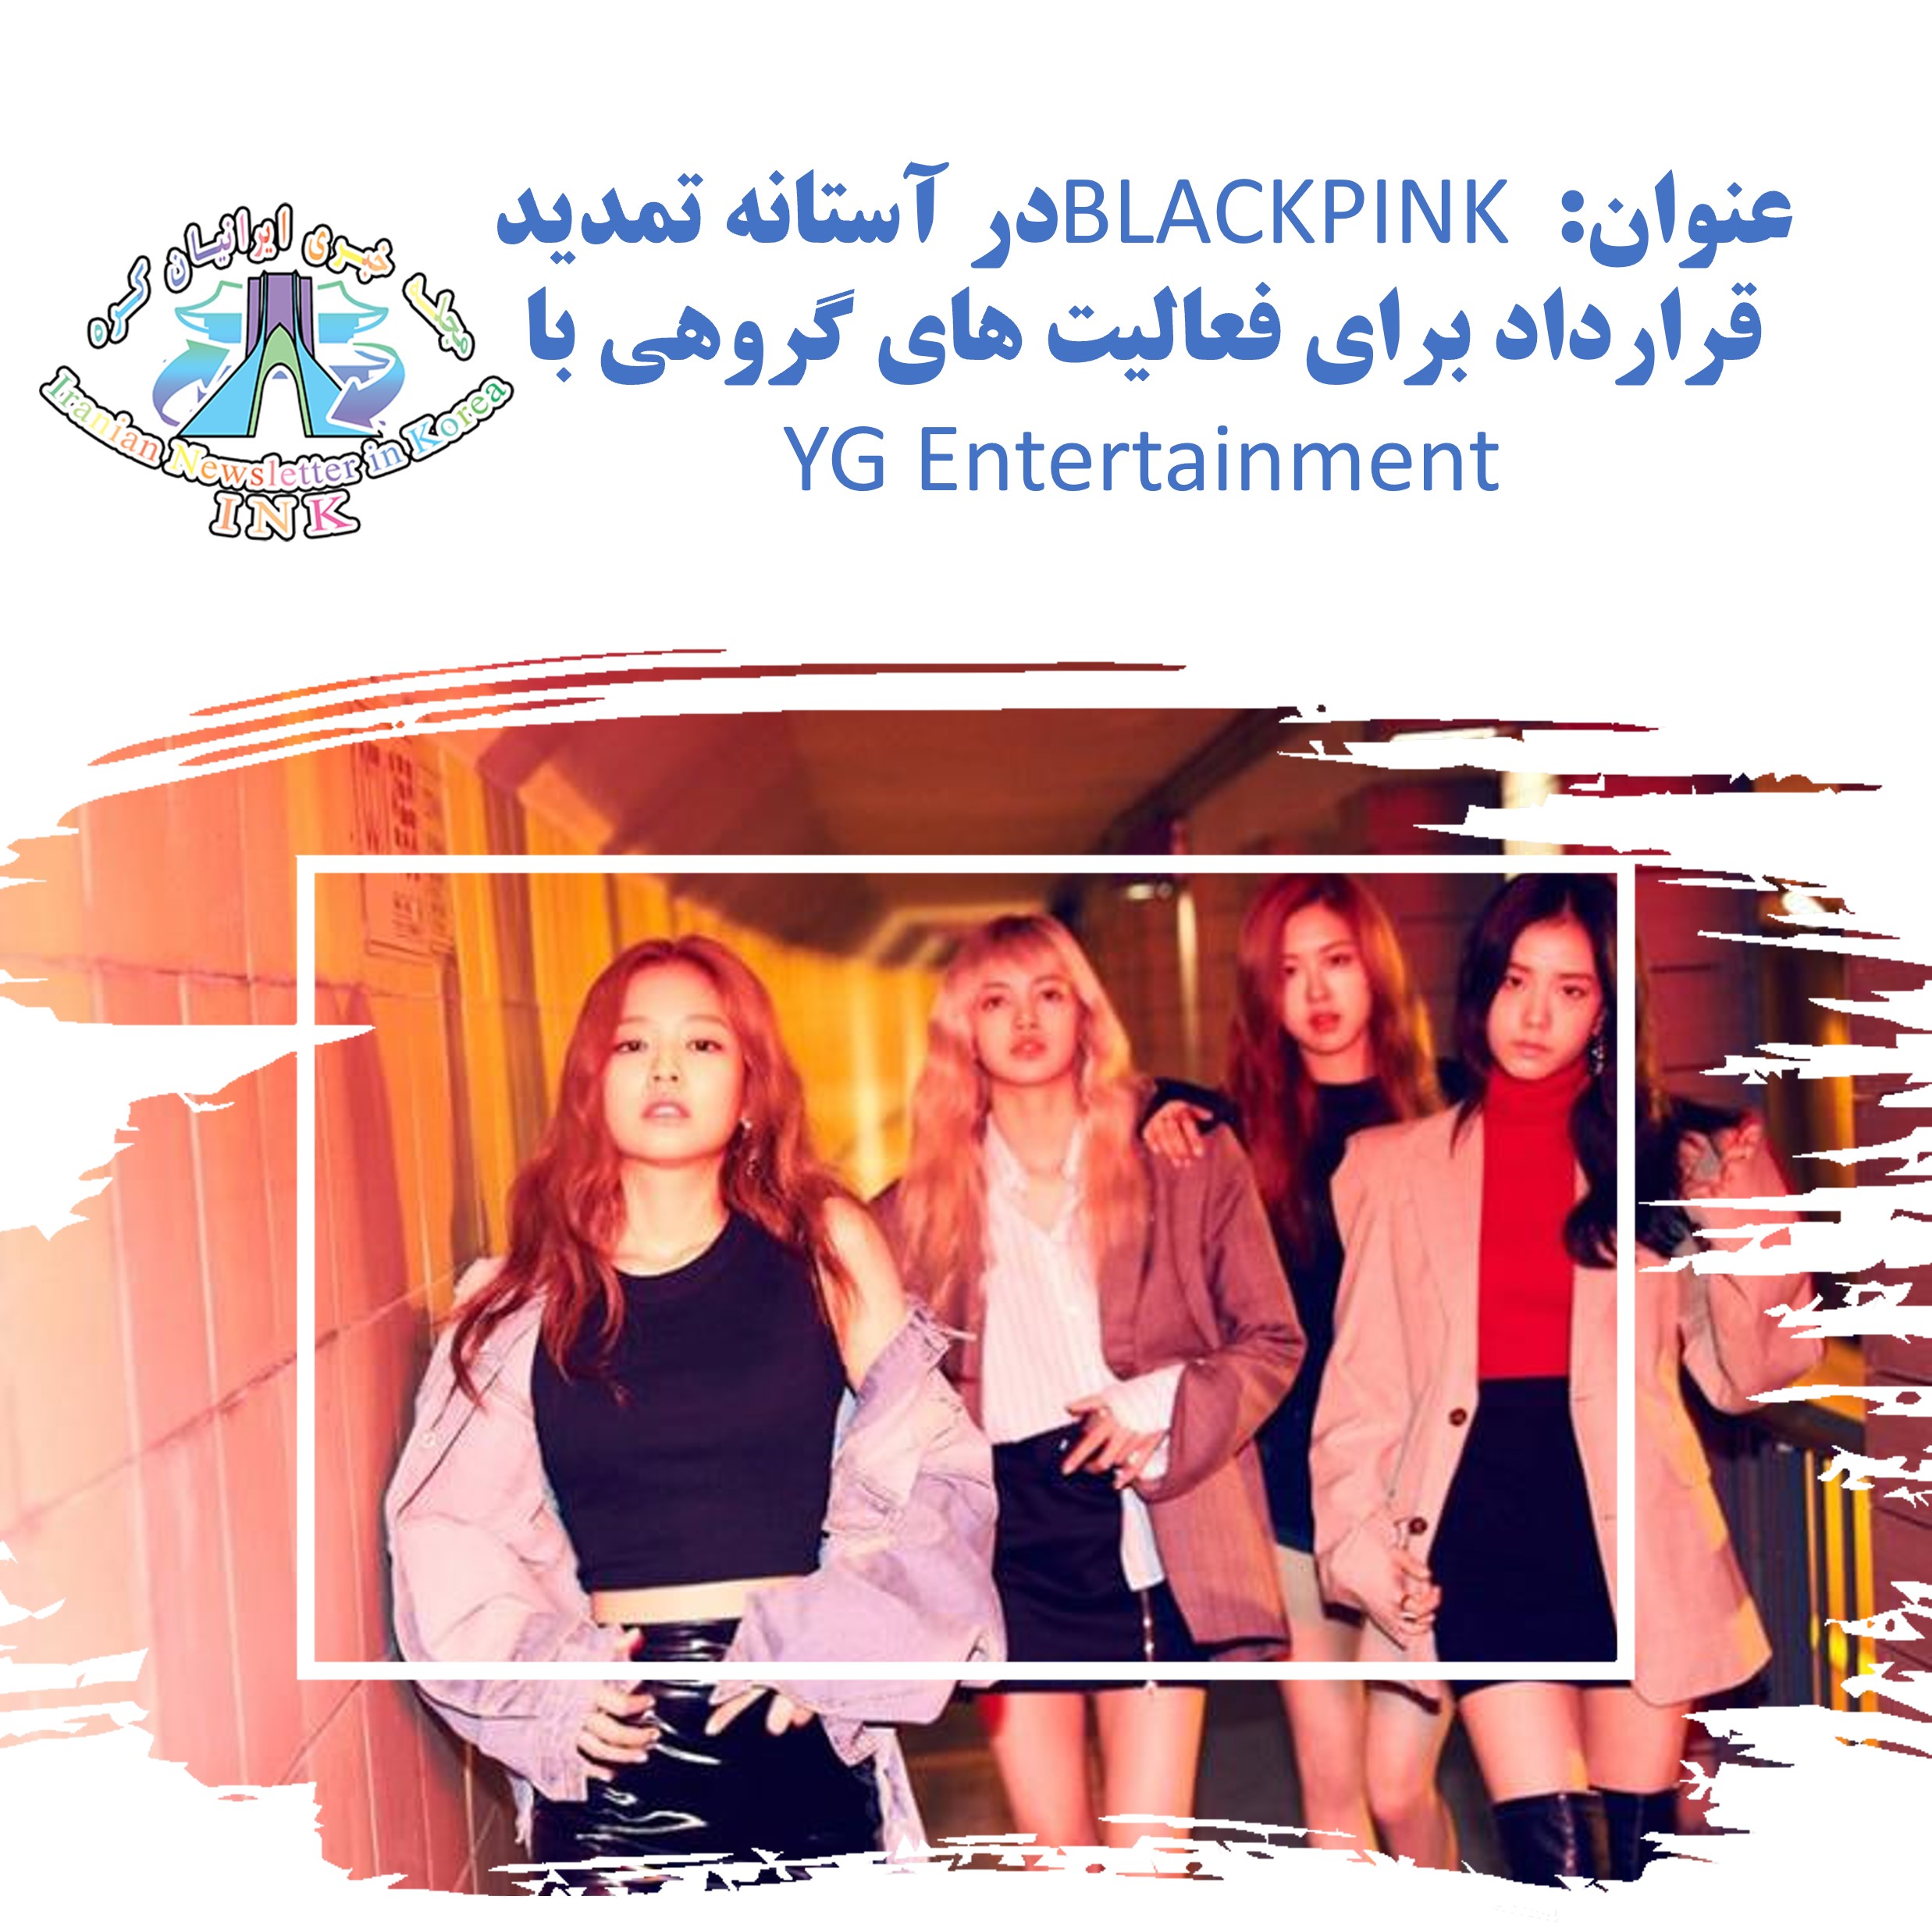 عنوان: BLACKPINK در آستانه تمدید قرارداد برای فعالیت های گروهی با YG Entertainment